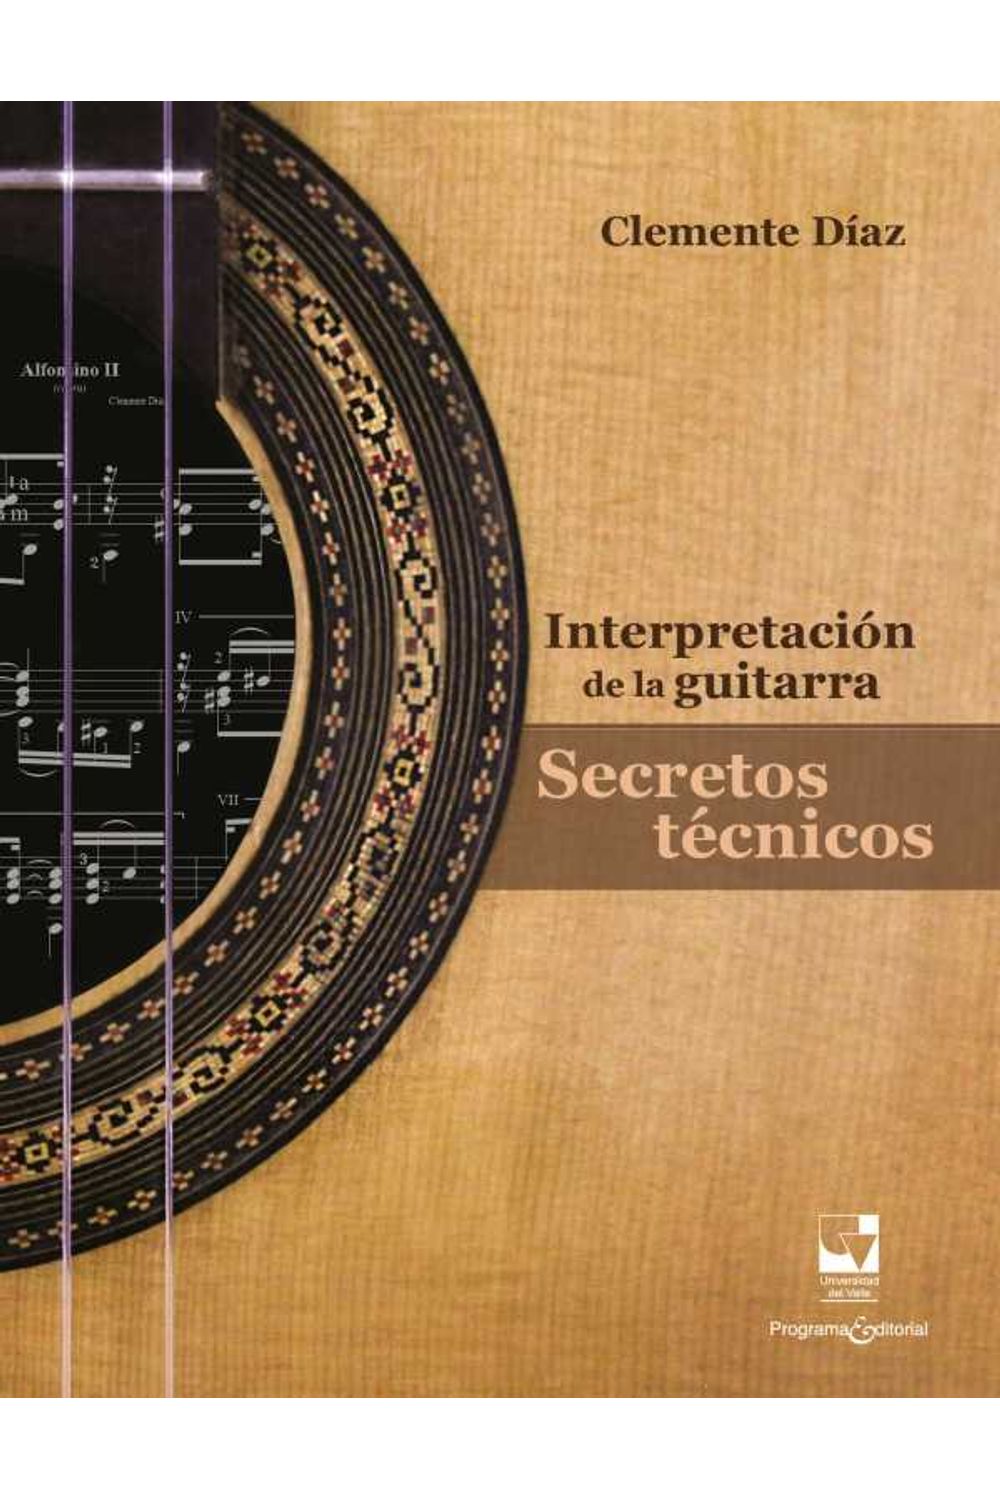 bw-interpretacioacuten-de-la-guitarra-programa-editorial-universidad-del-valle-9790801631312